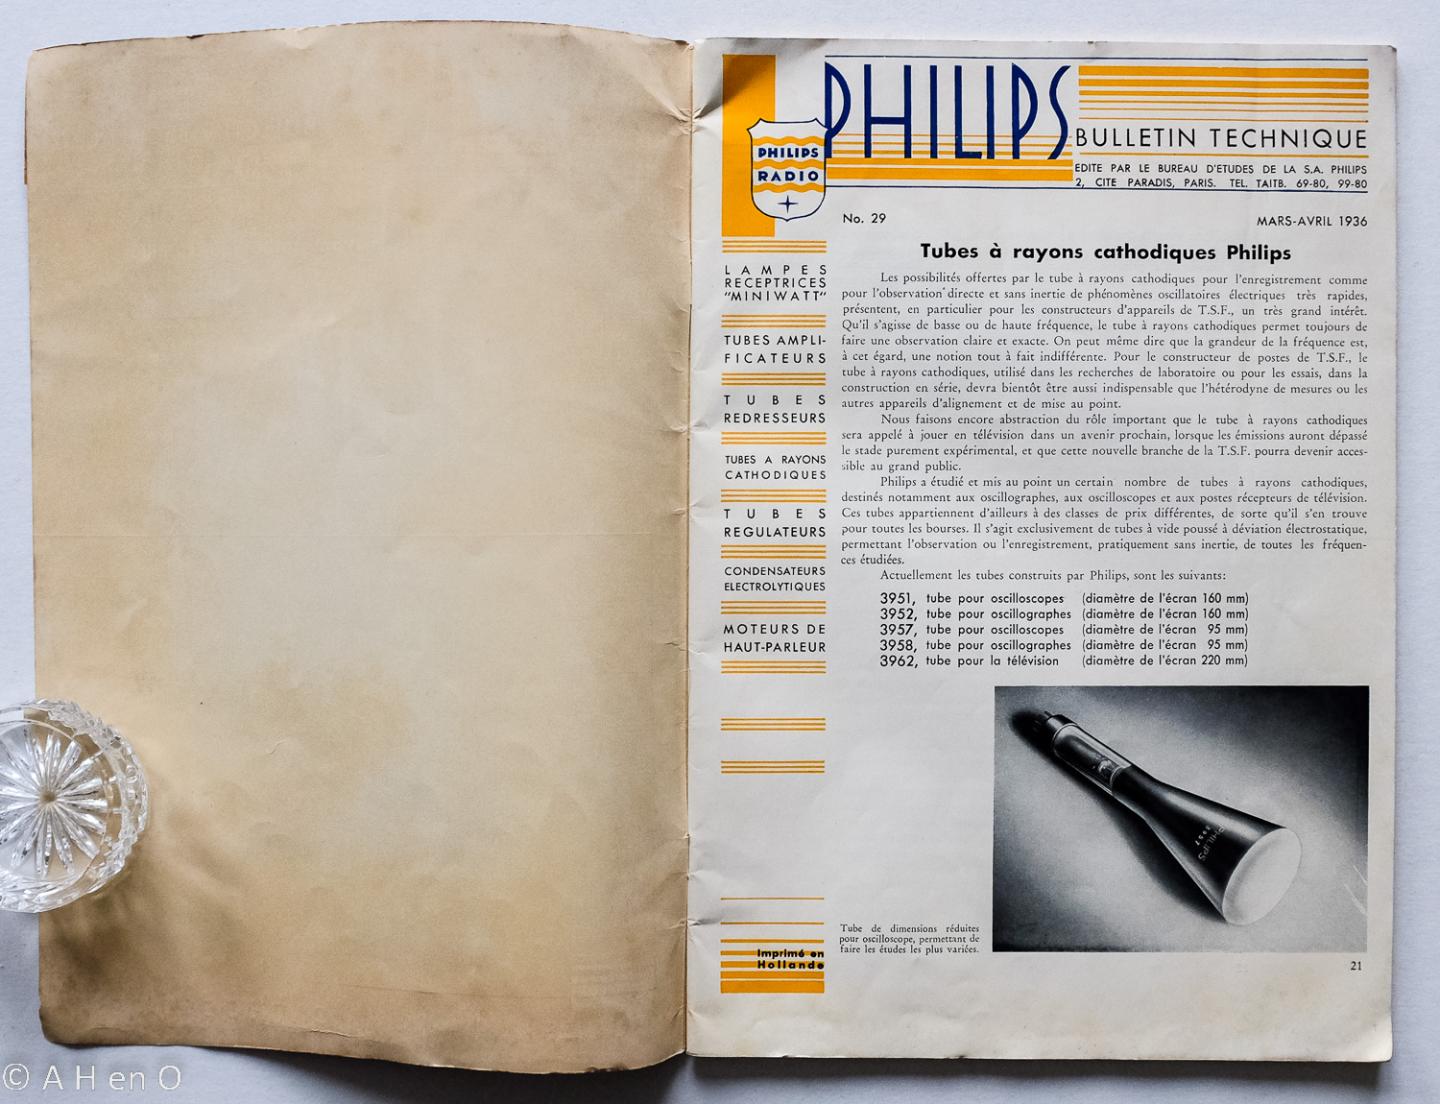 Philips Gloeilampenfabrieken Nederland n.v., Eindhoven - Philips "Miniwatt" Tubes à rayons cathodiques